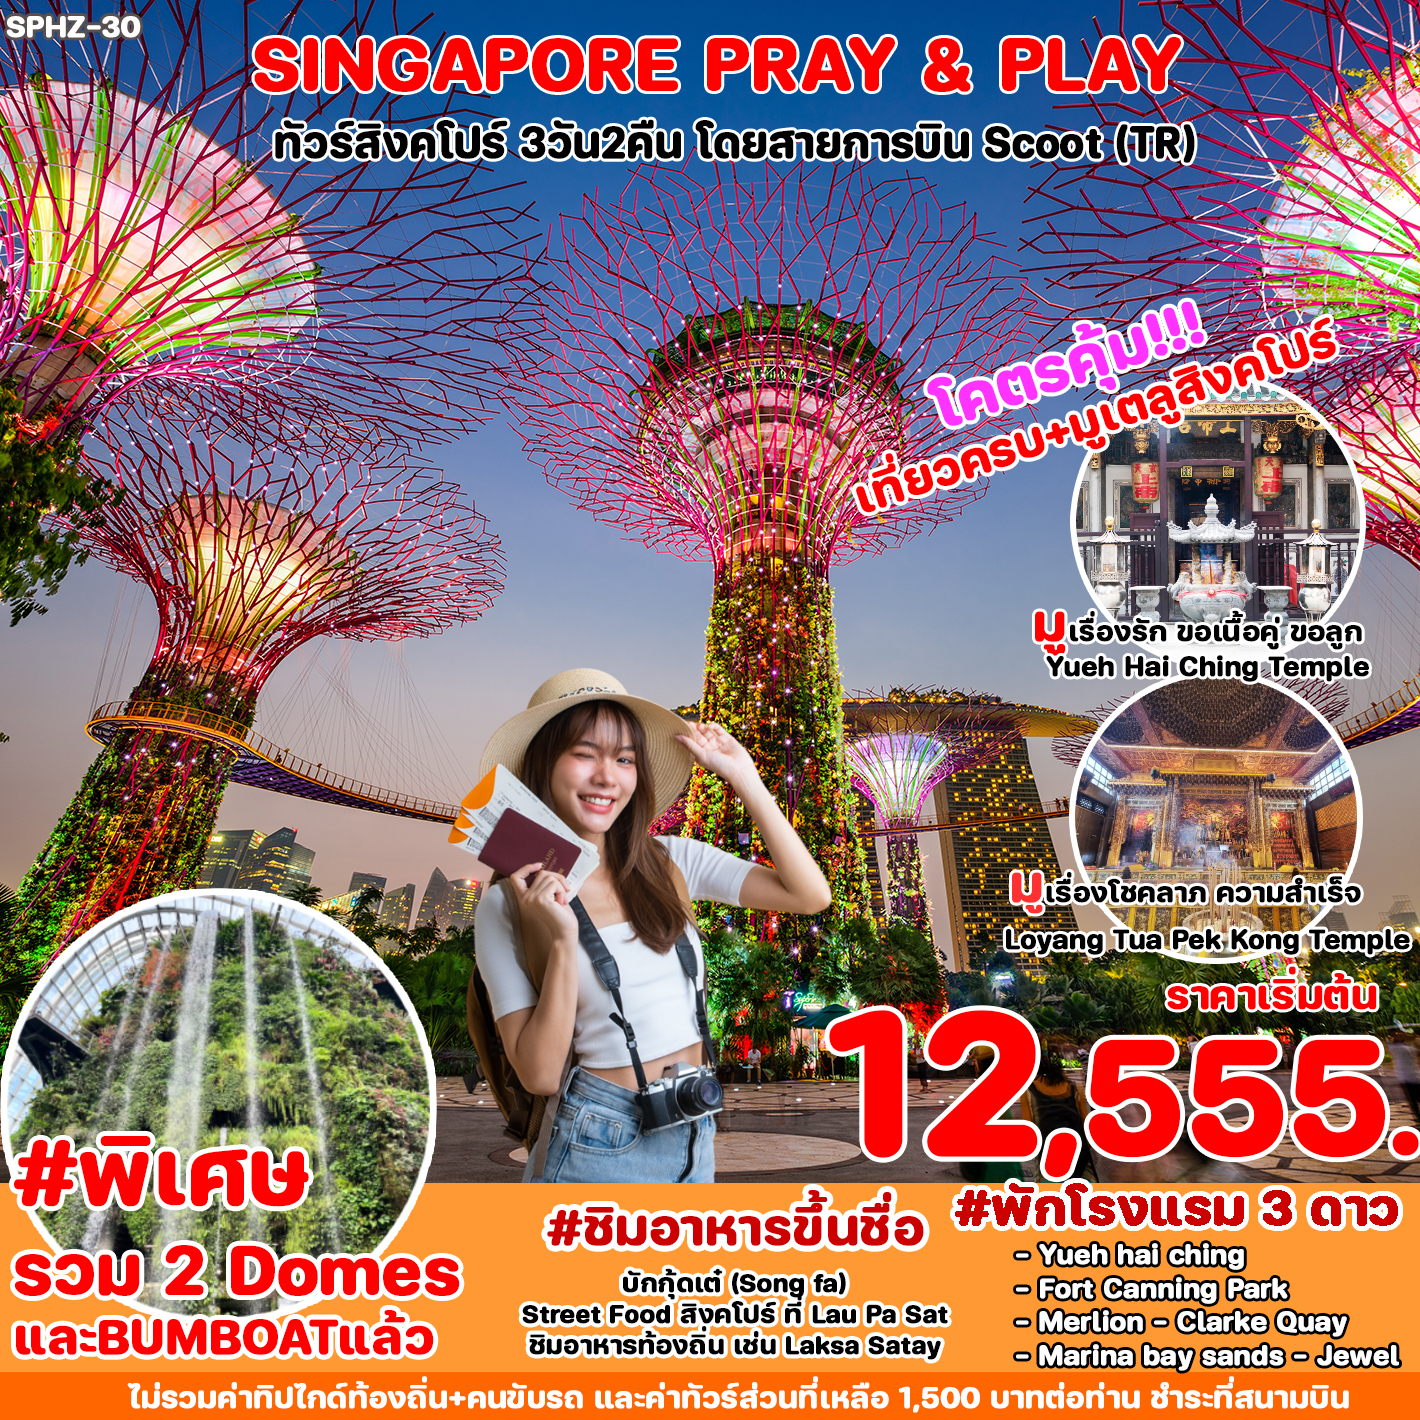 ทัวร์สิงคโปร์ SINGAPORE PRAY&PLAY 3D2N (TR)